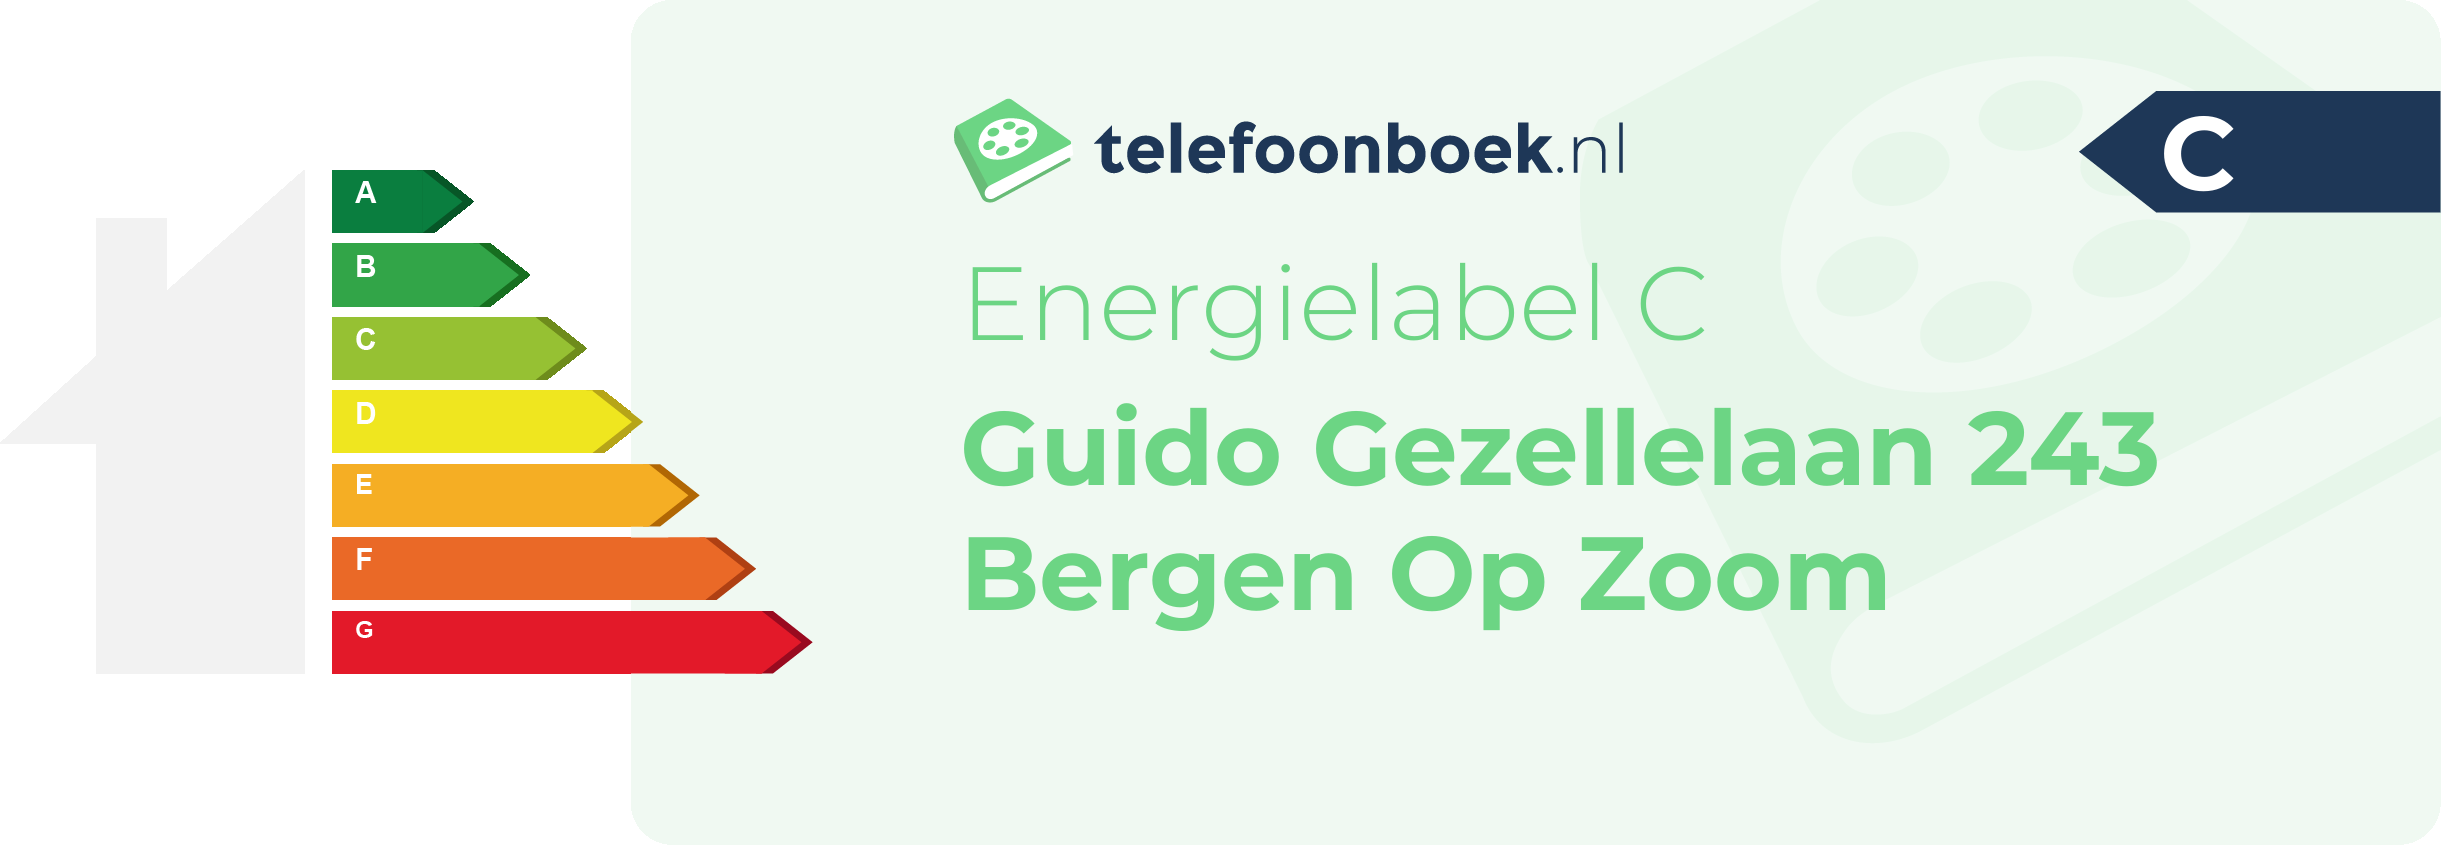 Energielabel Guido Gezellelaan 243 Bergen Op Zoom